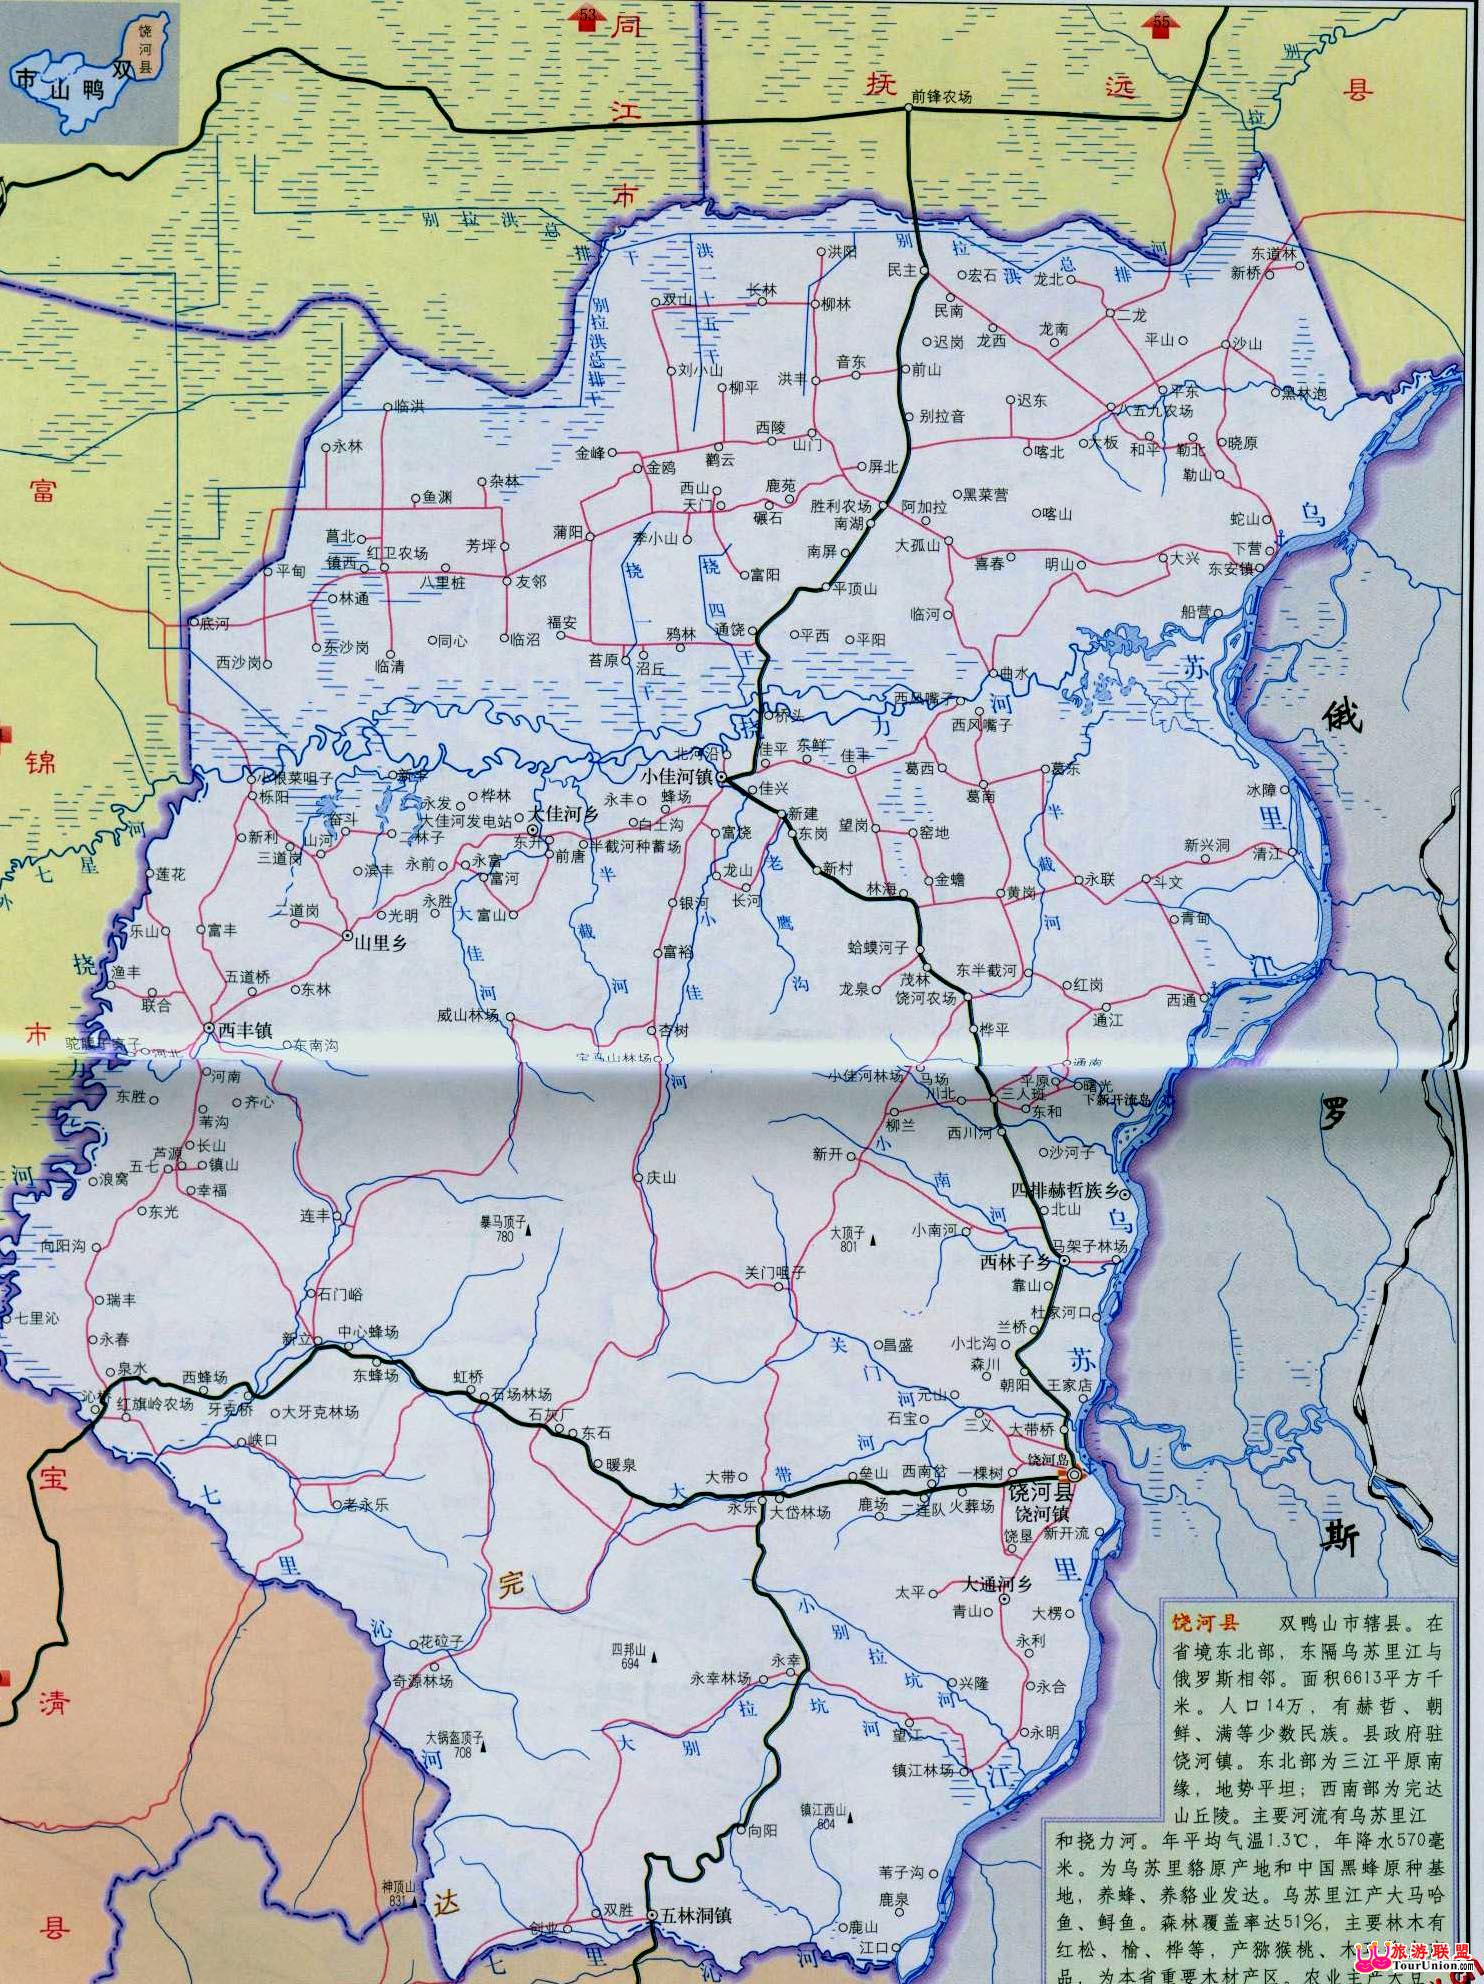 地图 ·侥河风光图库 ·图行双鸭山 图片